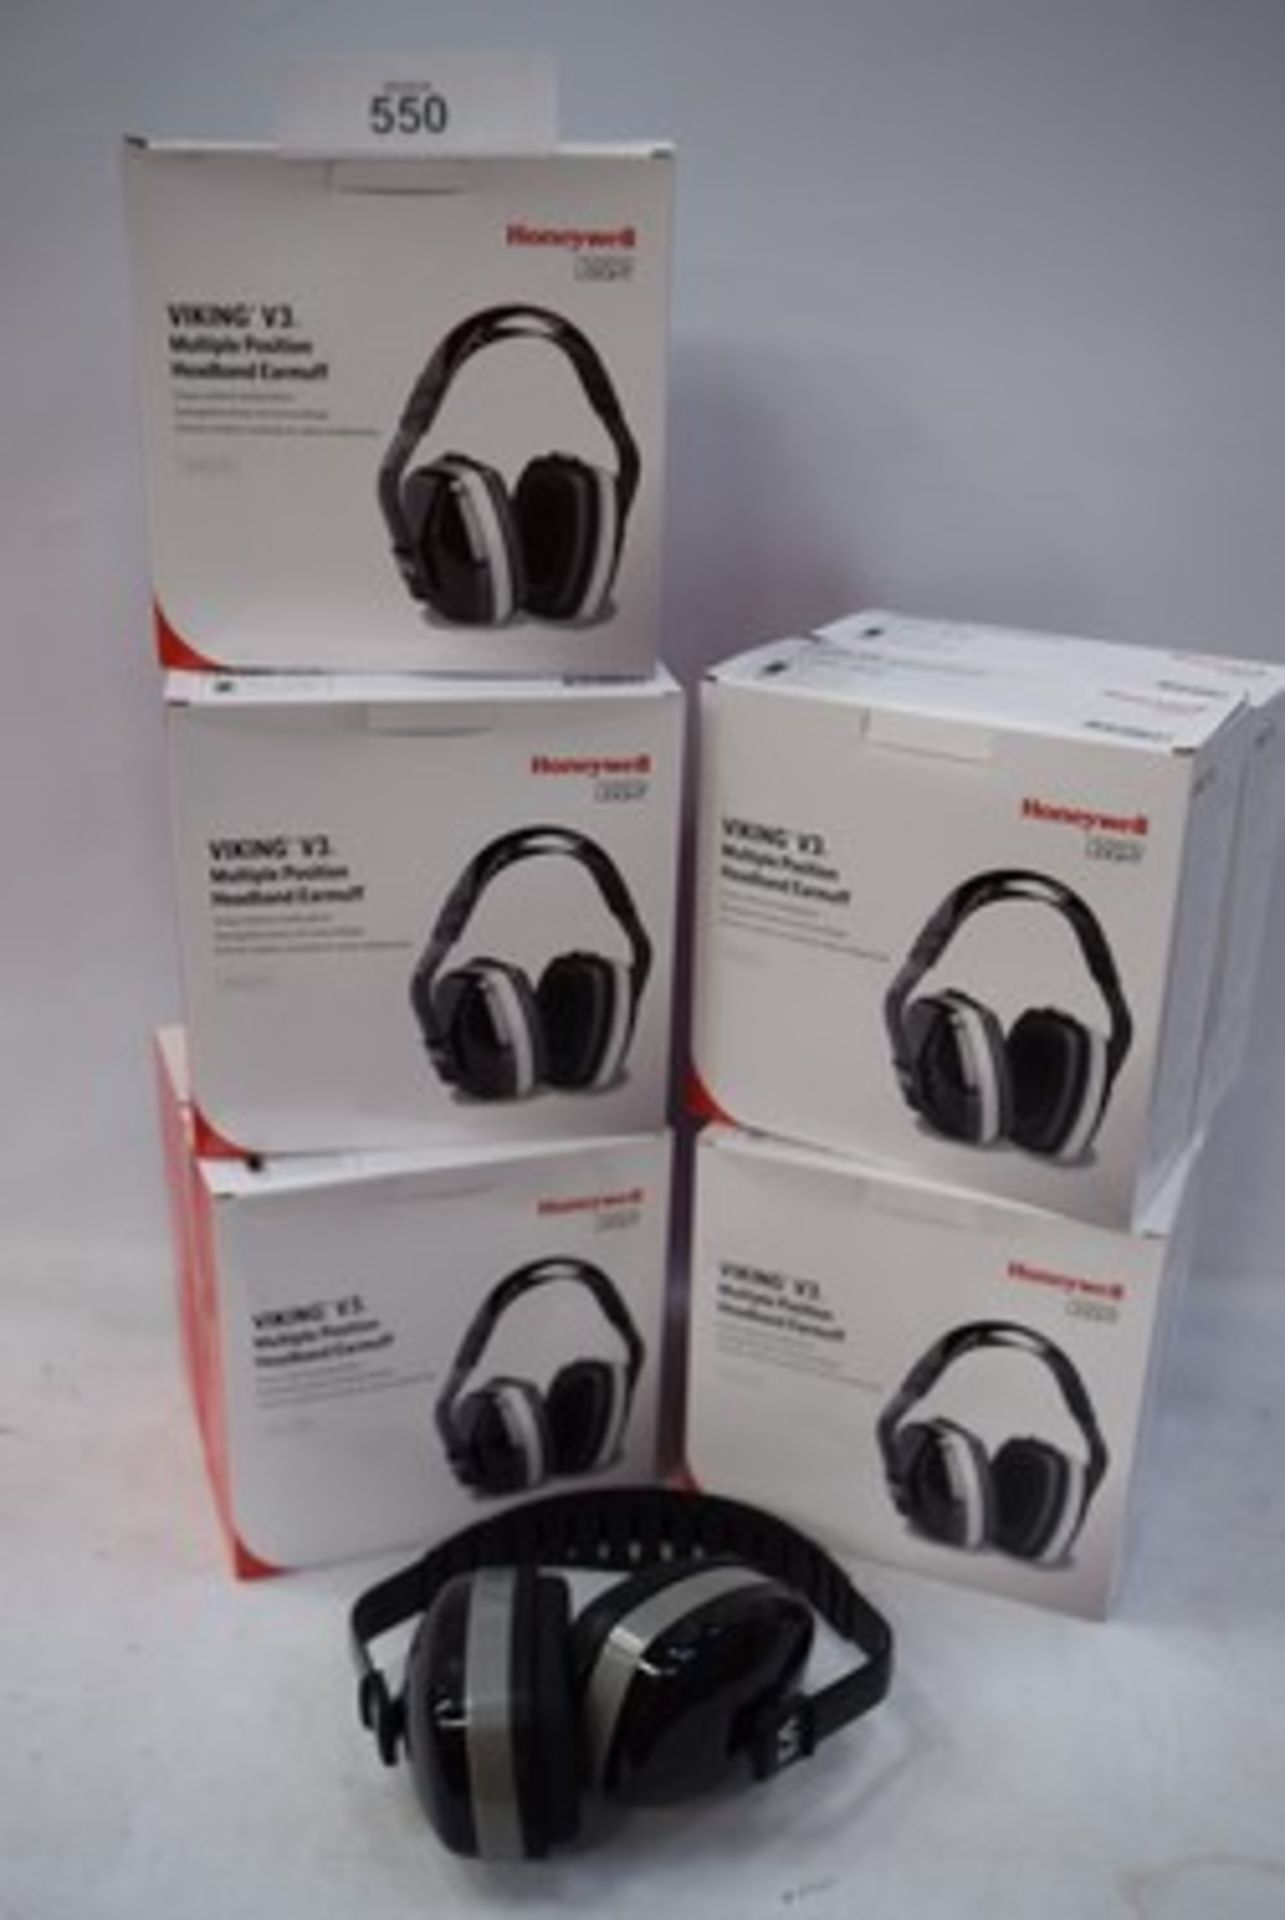 10 x Honeywell Howard light Viking V3 multiple position headband earmuffs, code 1011170, EAN